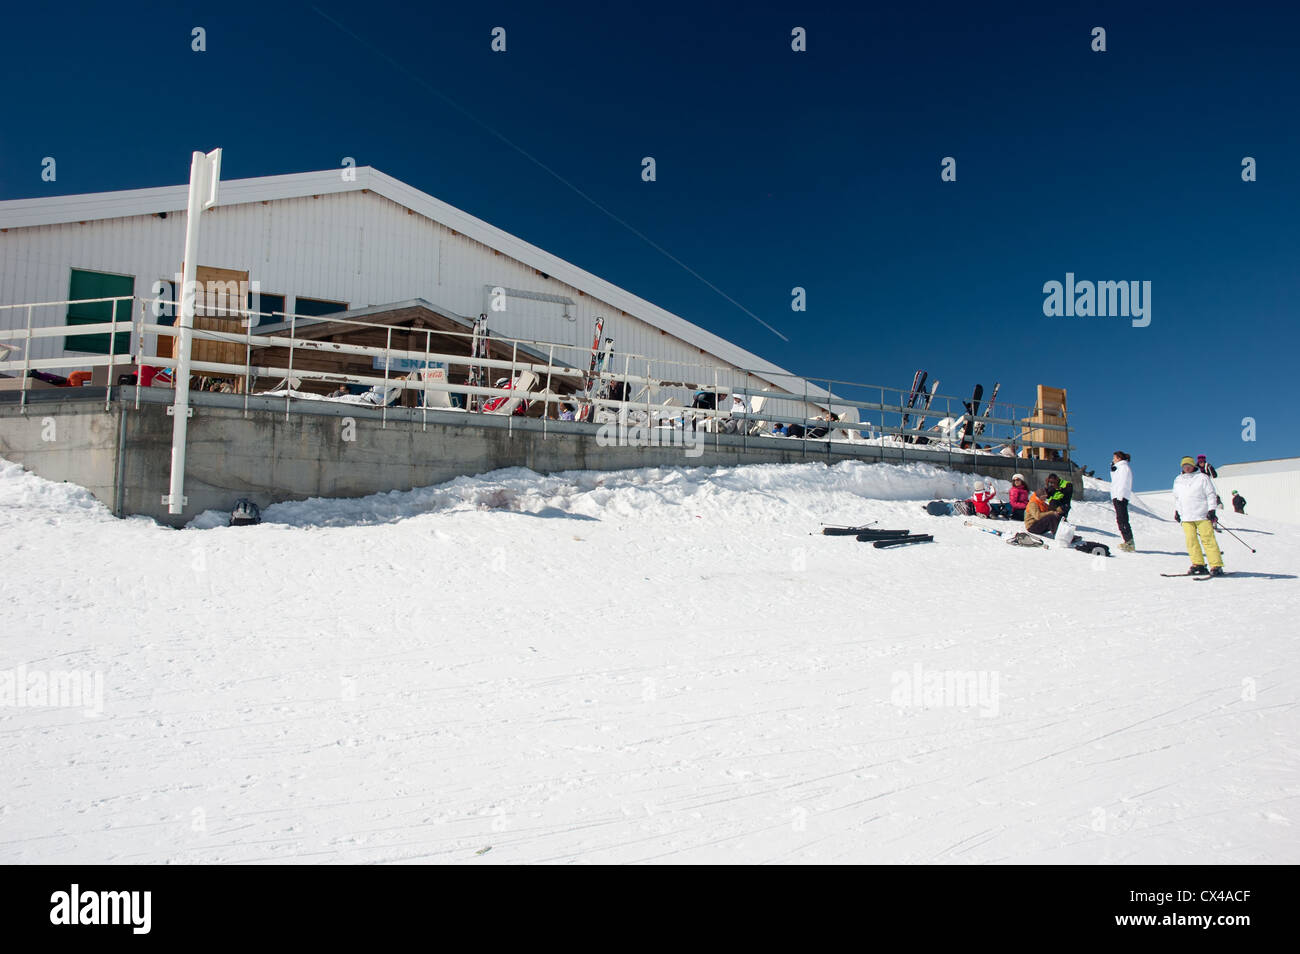 Gli sciatori di fronte ad un ristorante Foto Stock